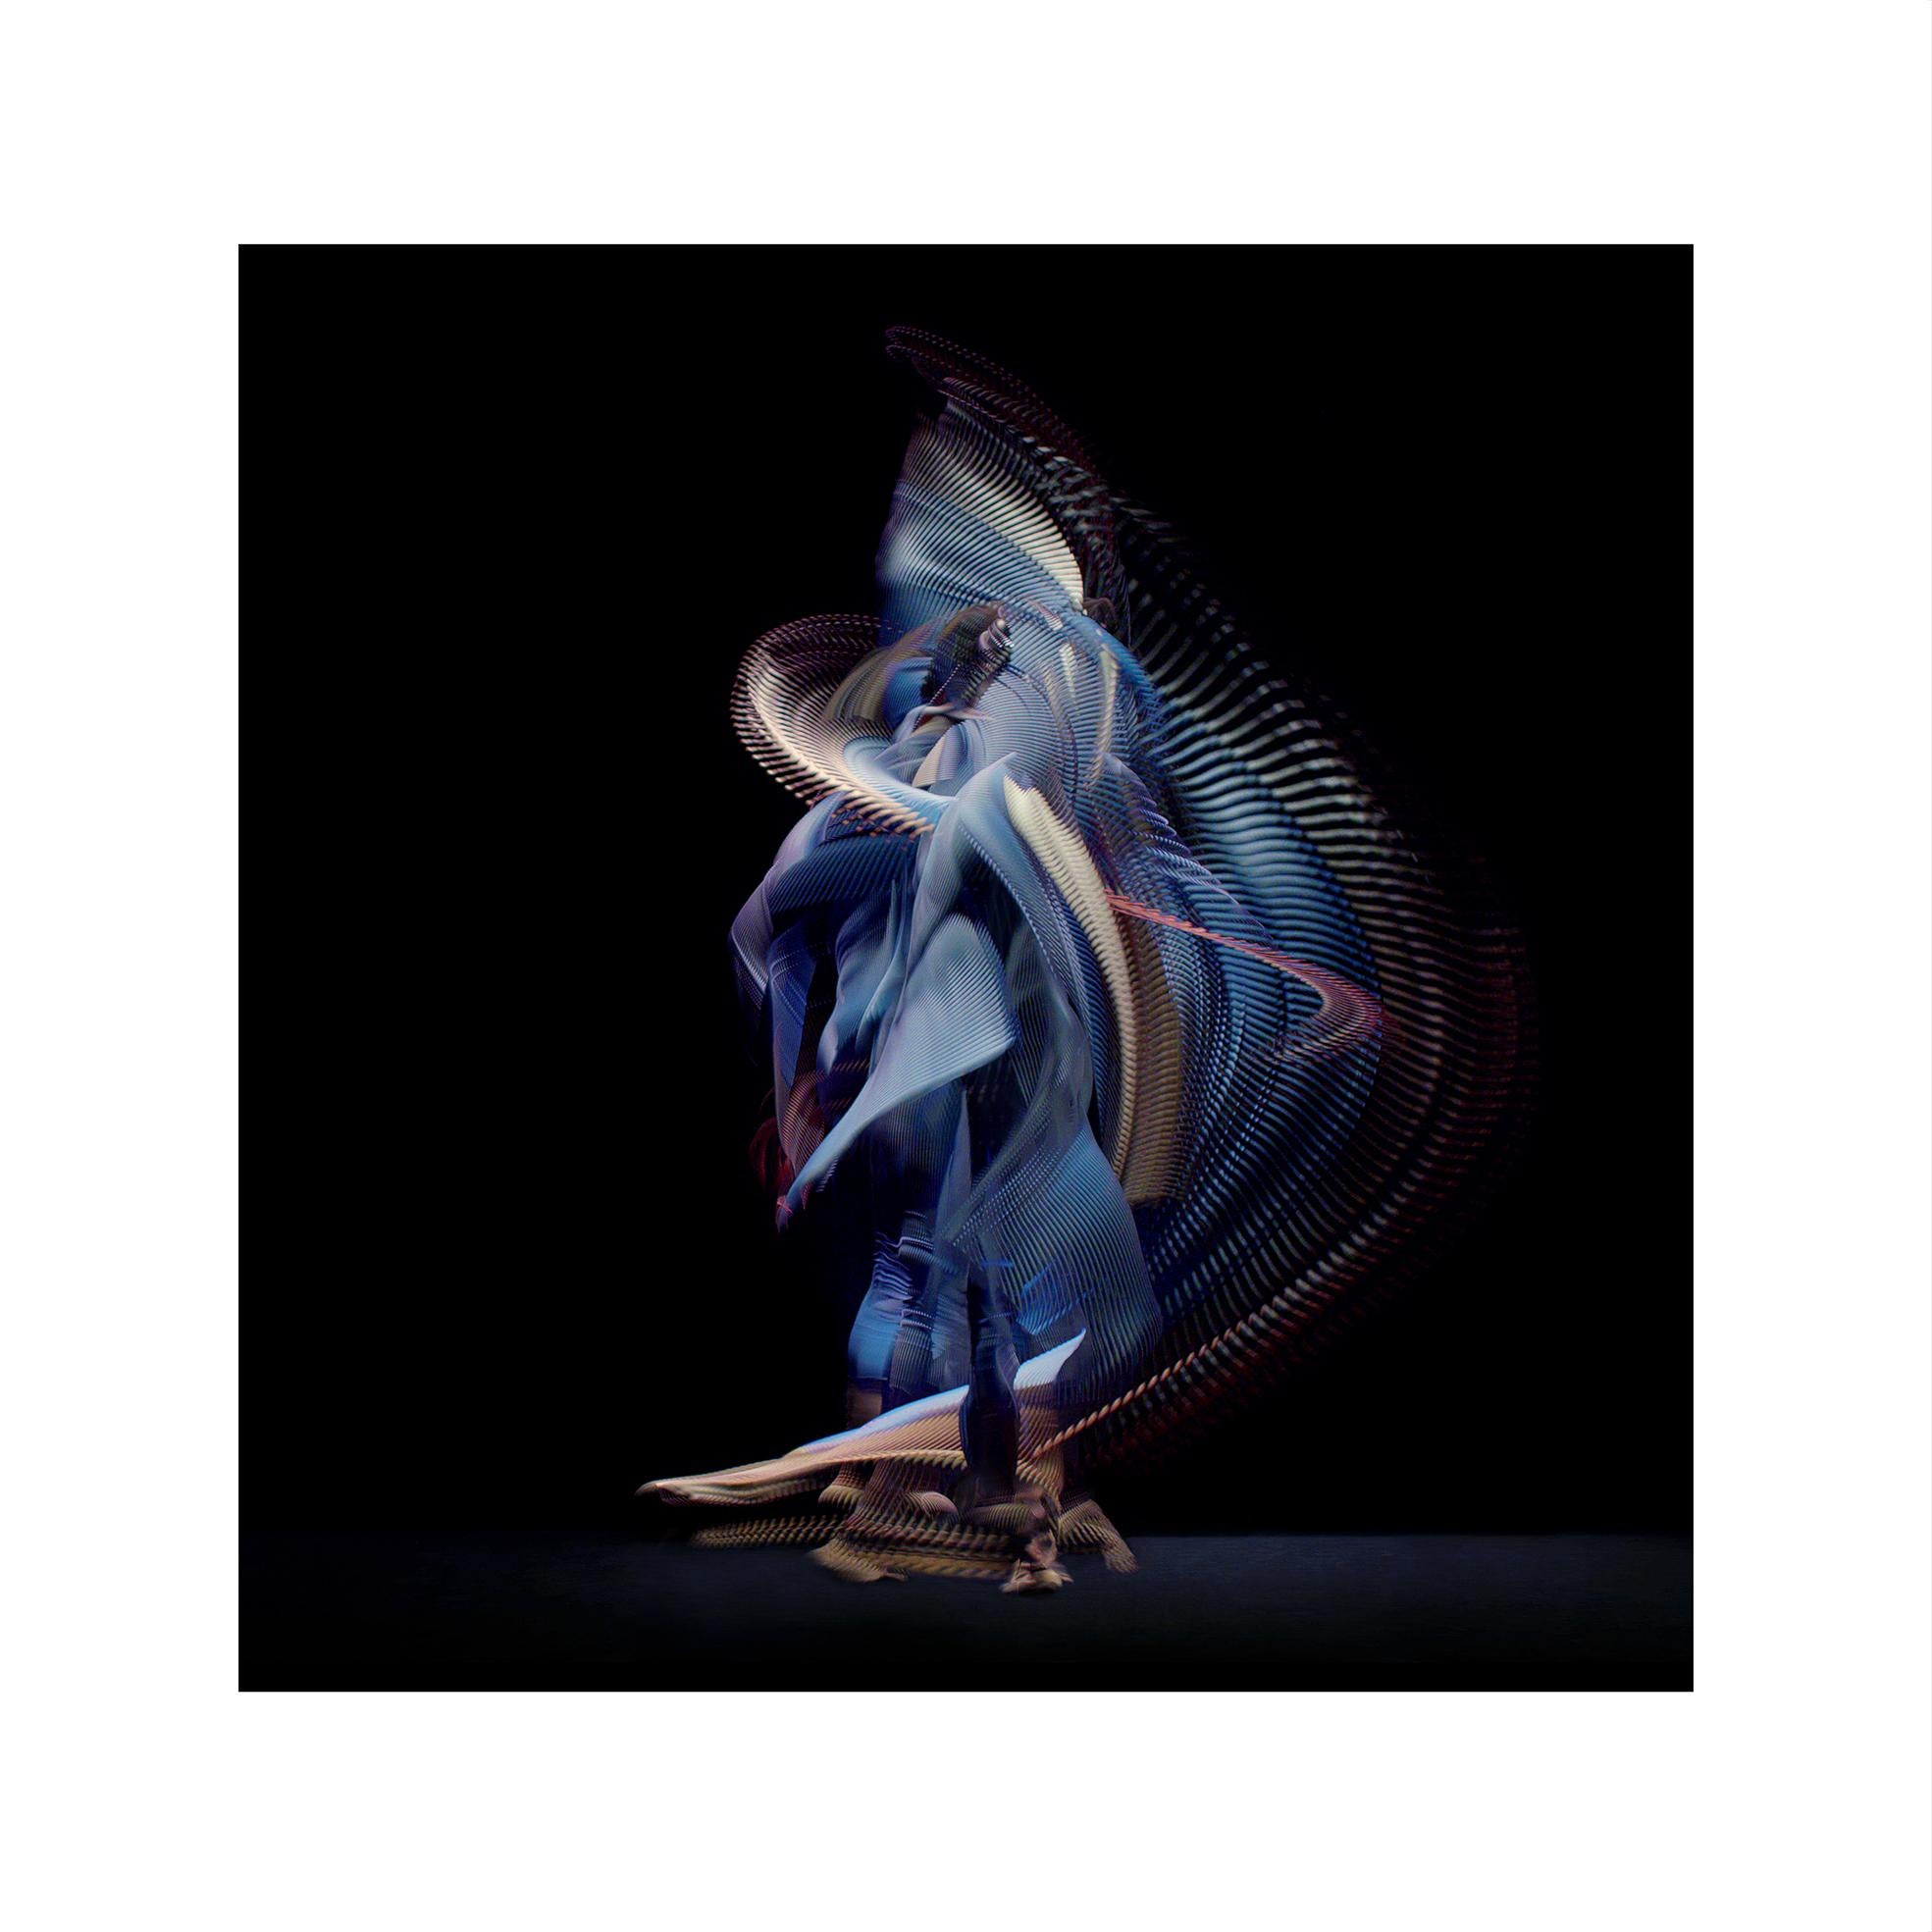 Abstrakte Tänzer, Dunkelblau 1, 2019 von Giles Revell – Fotografie, Schwarz, Ballett